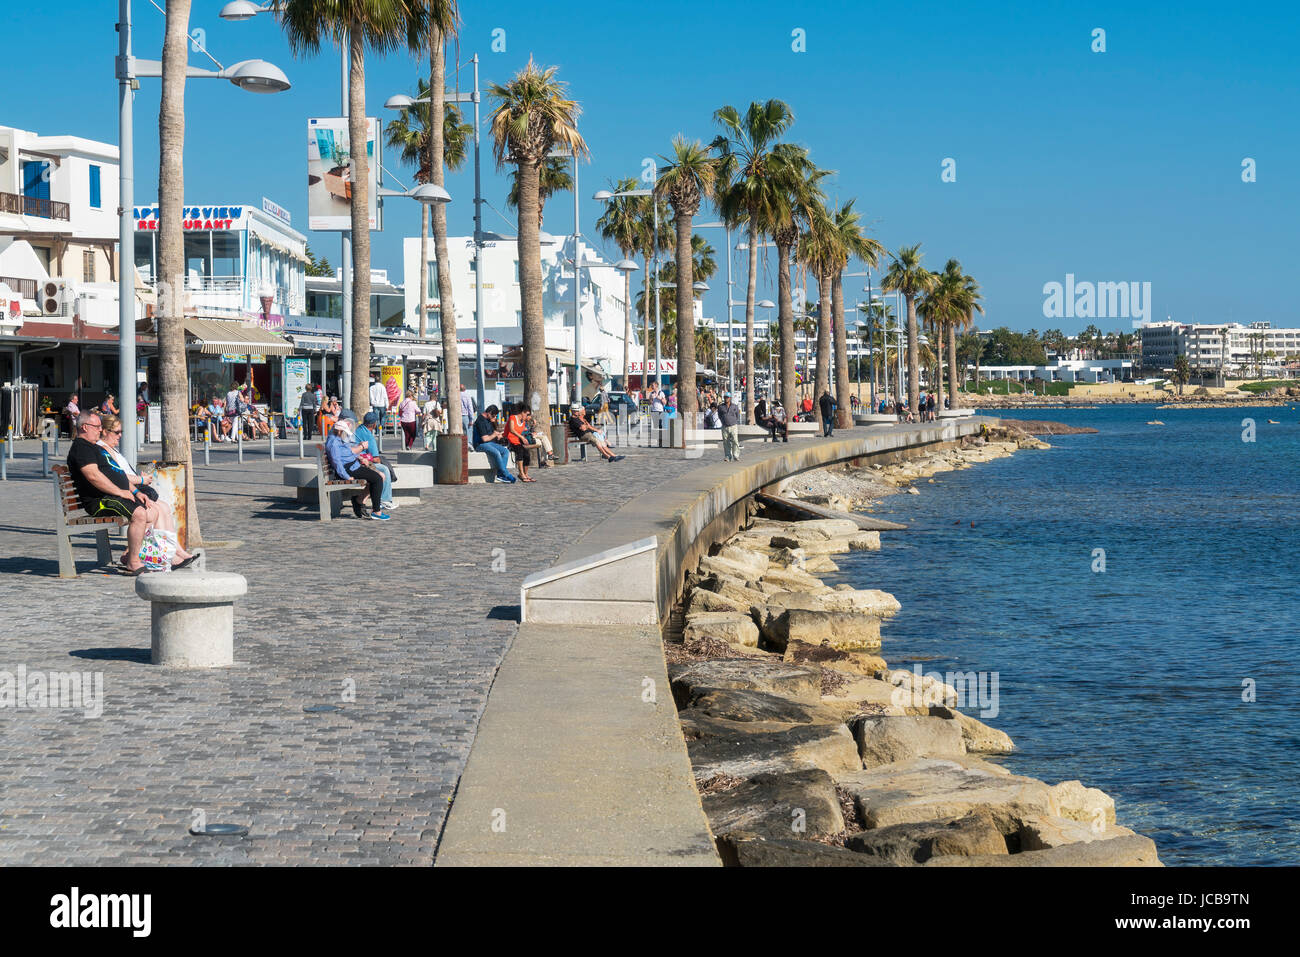 Le port de Paphos, zone touristique, front de mer, Chypre Photo Stock -  Alamy